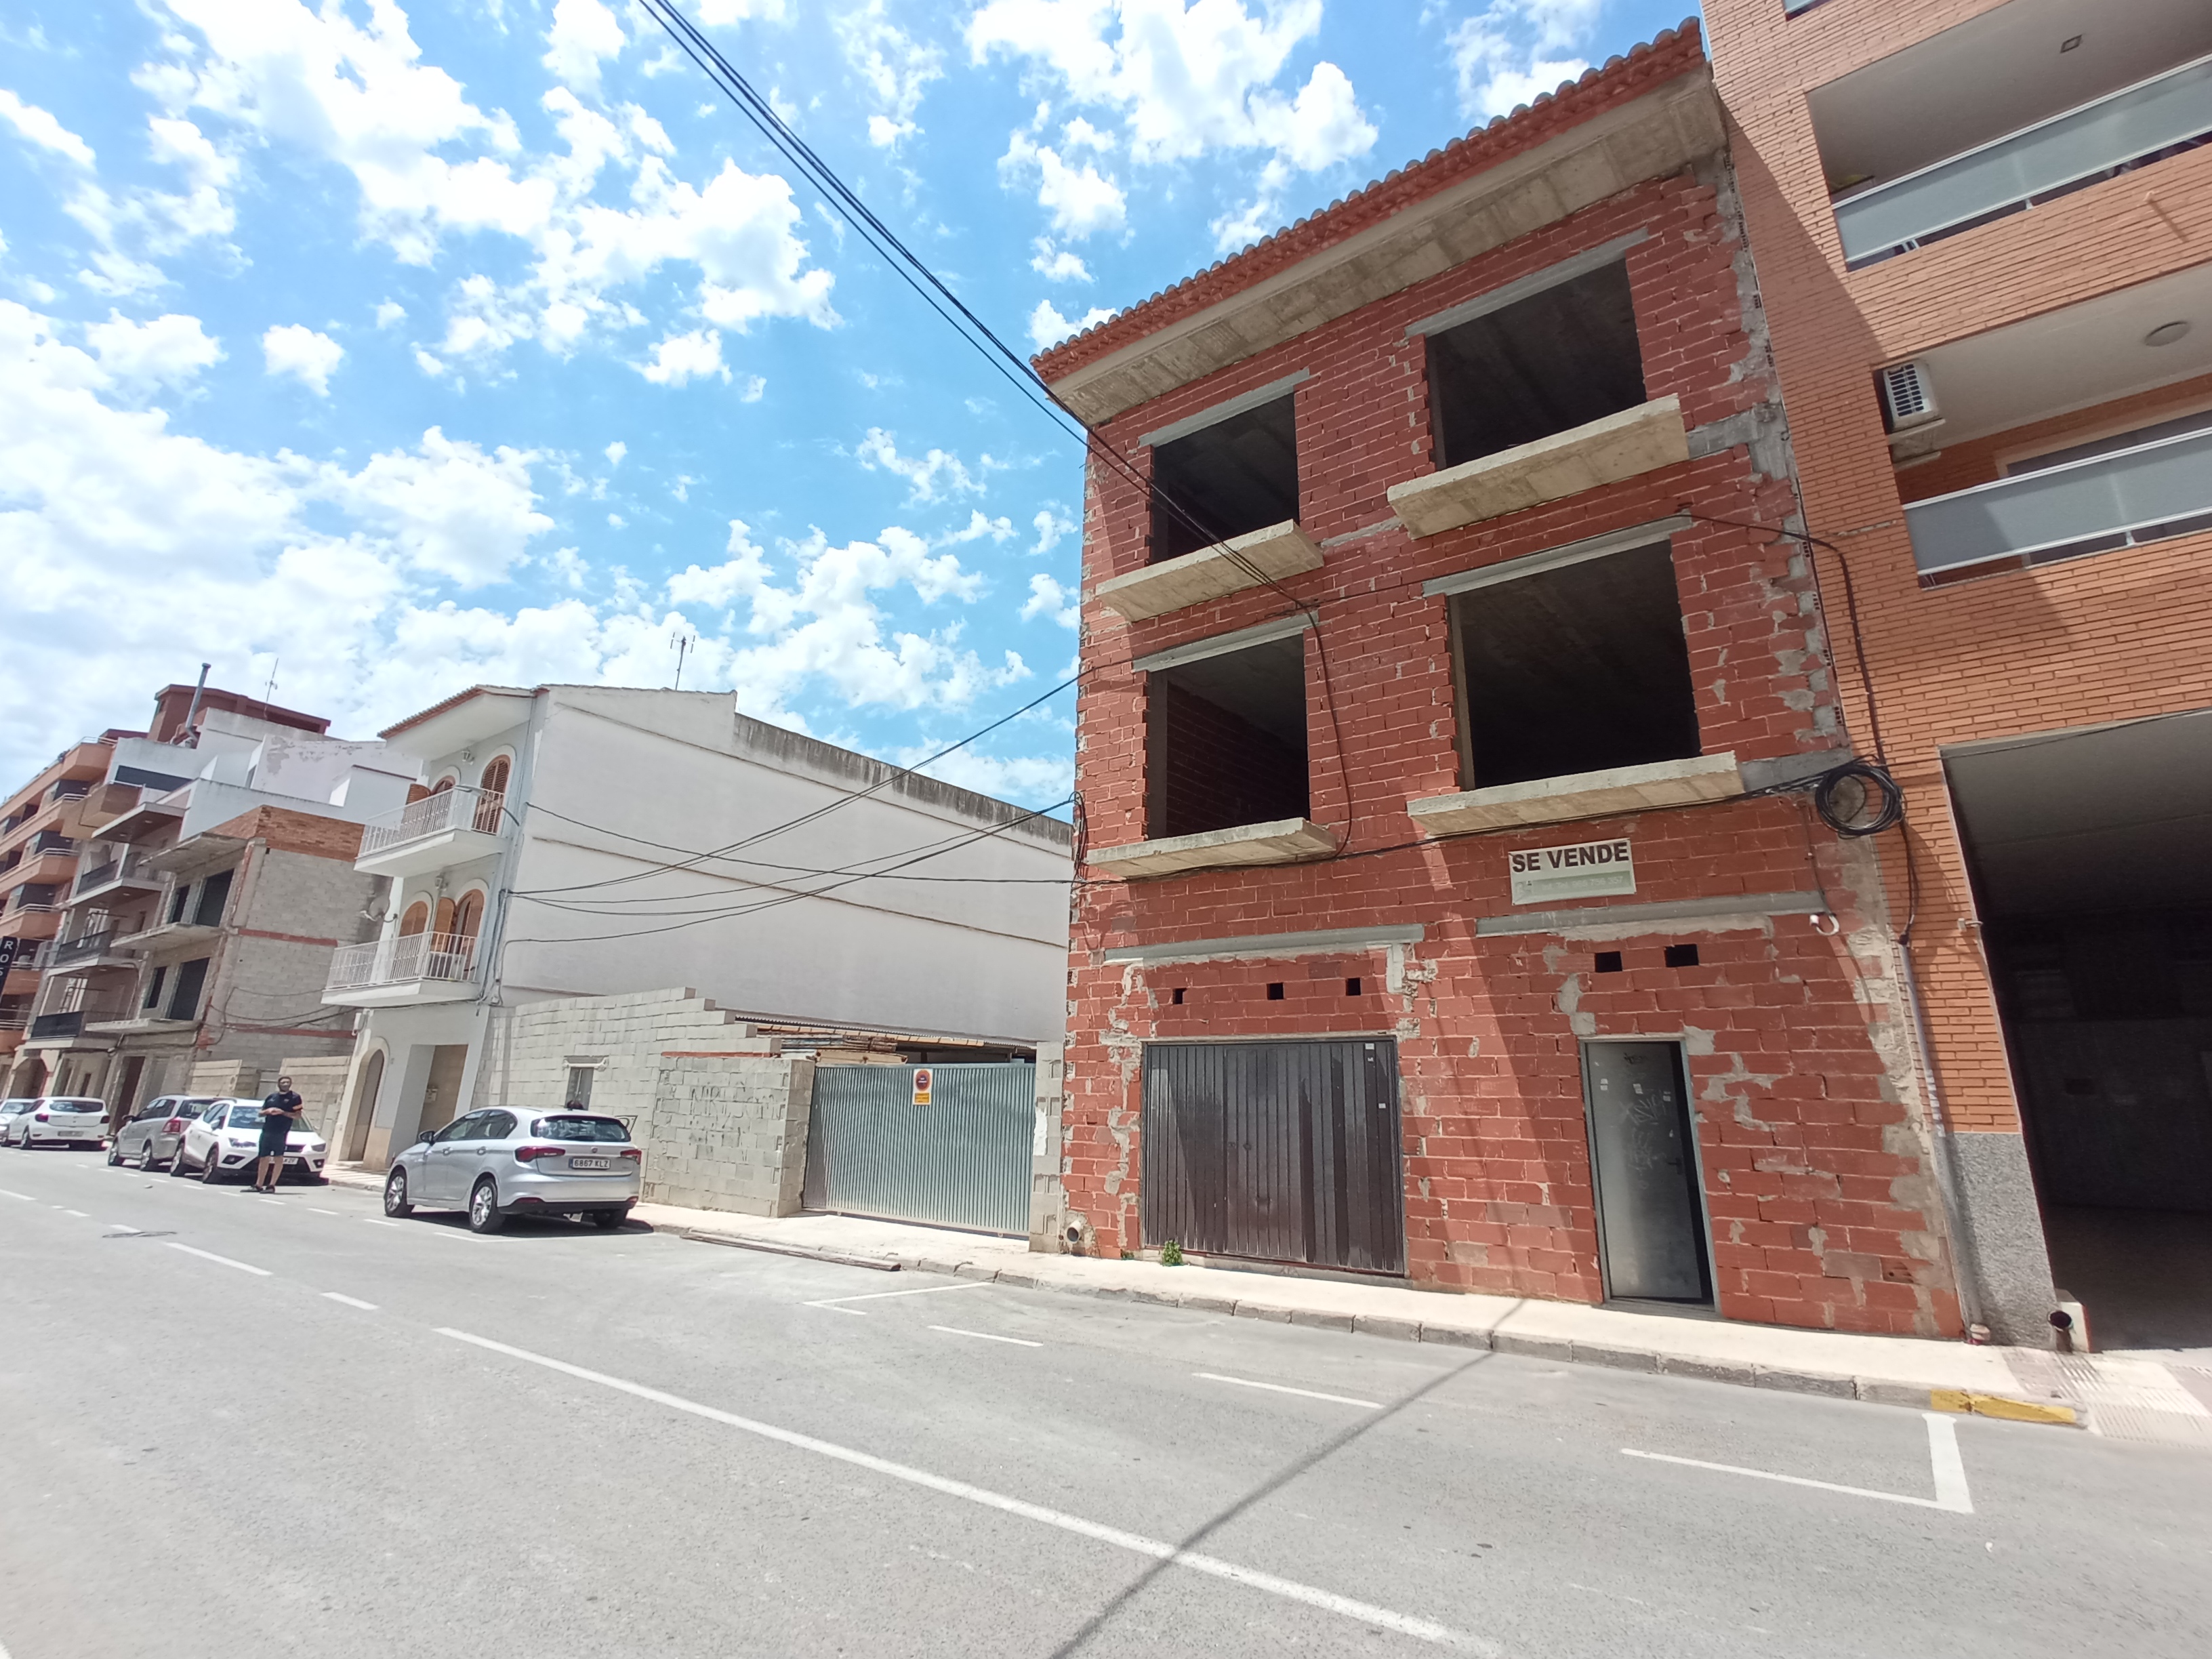 Housing under construction in Gata de Gorgos